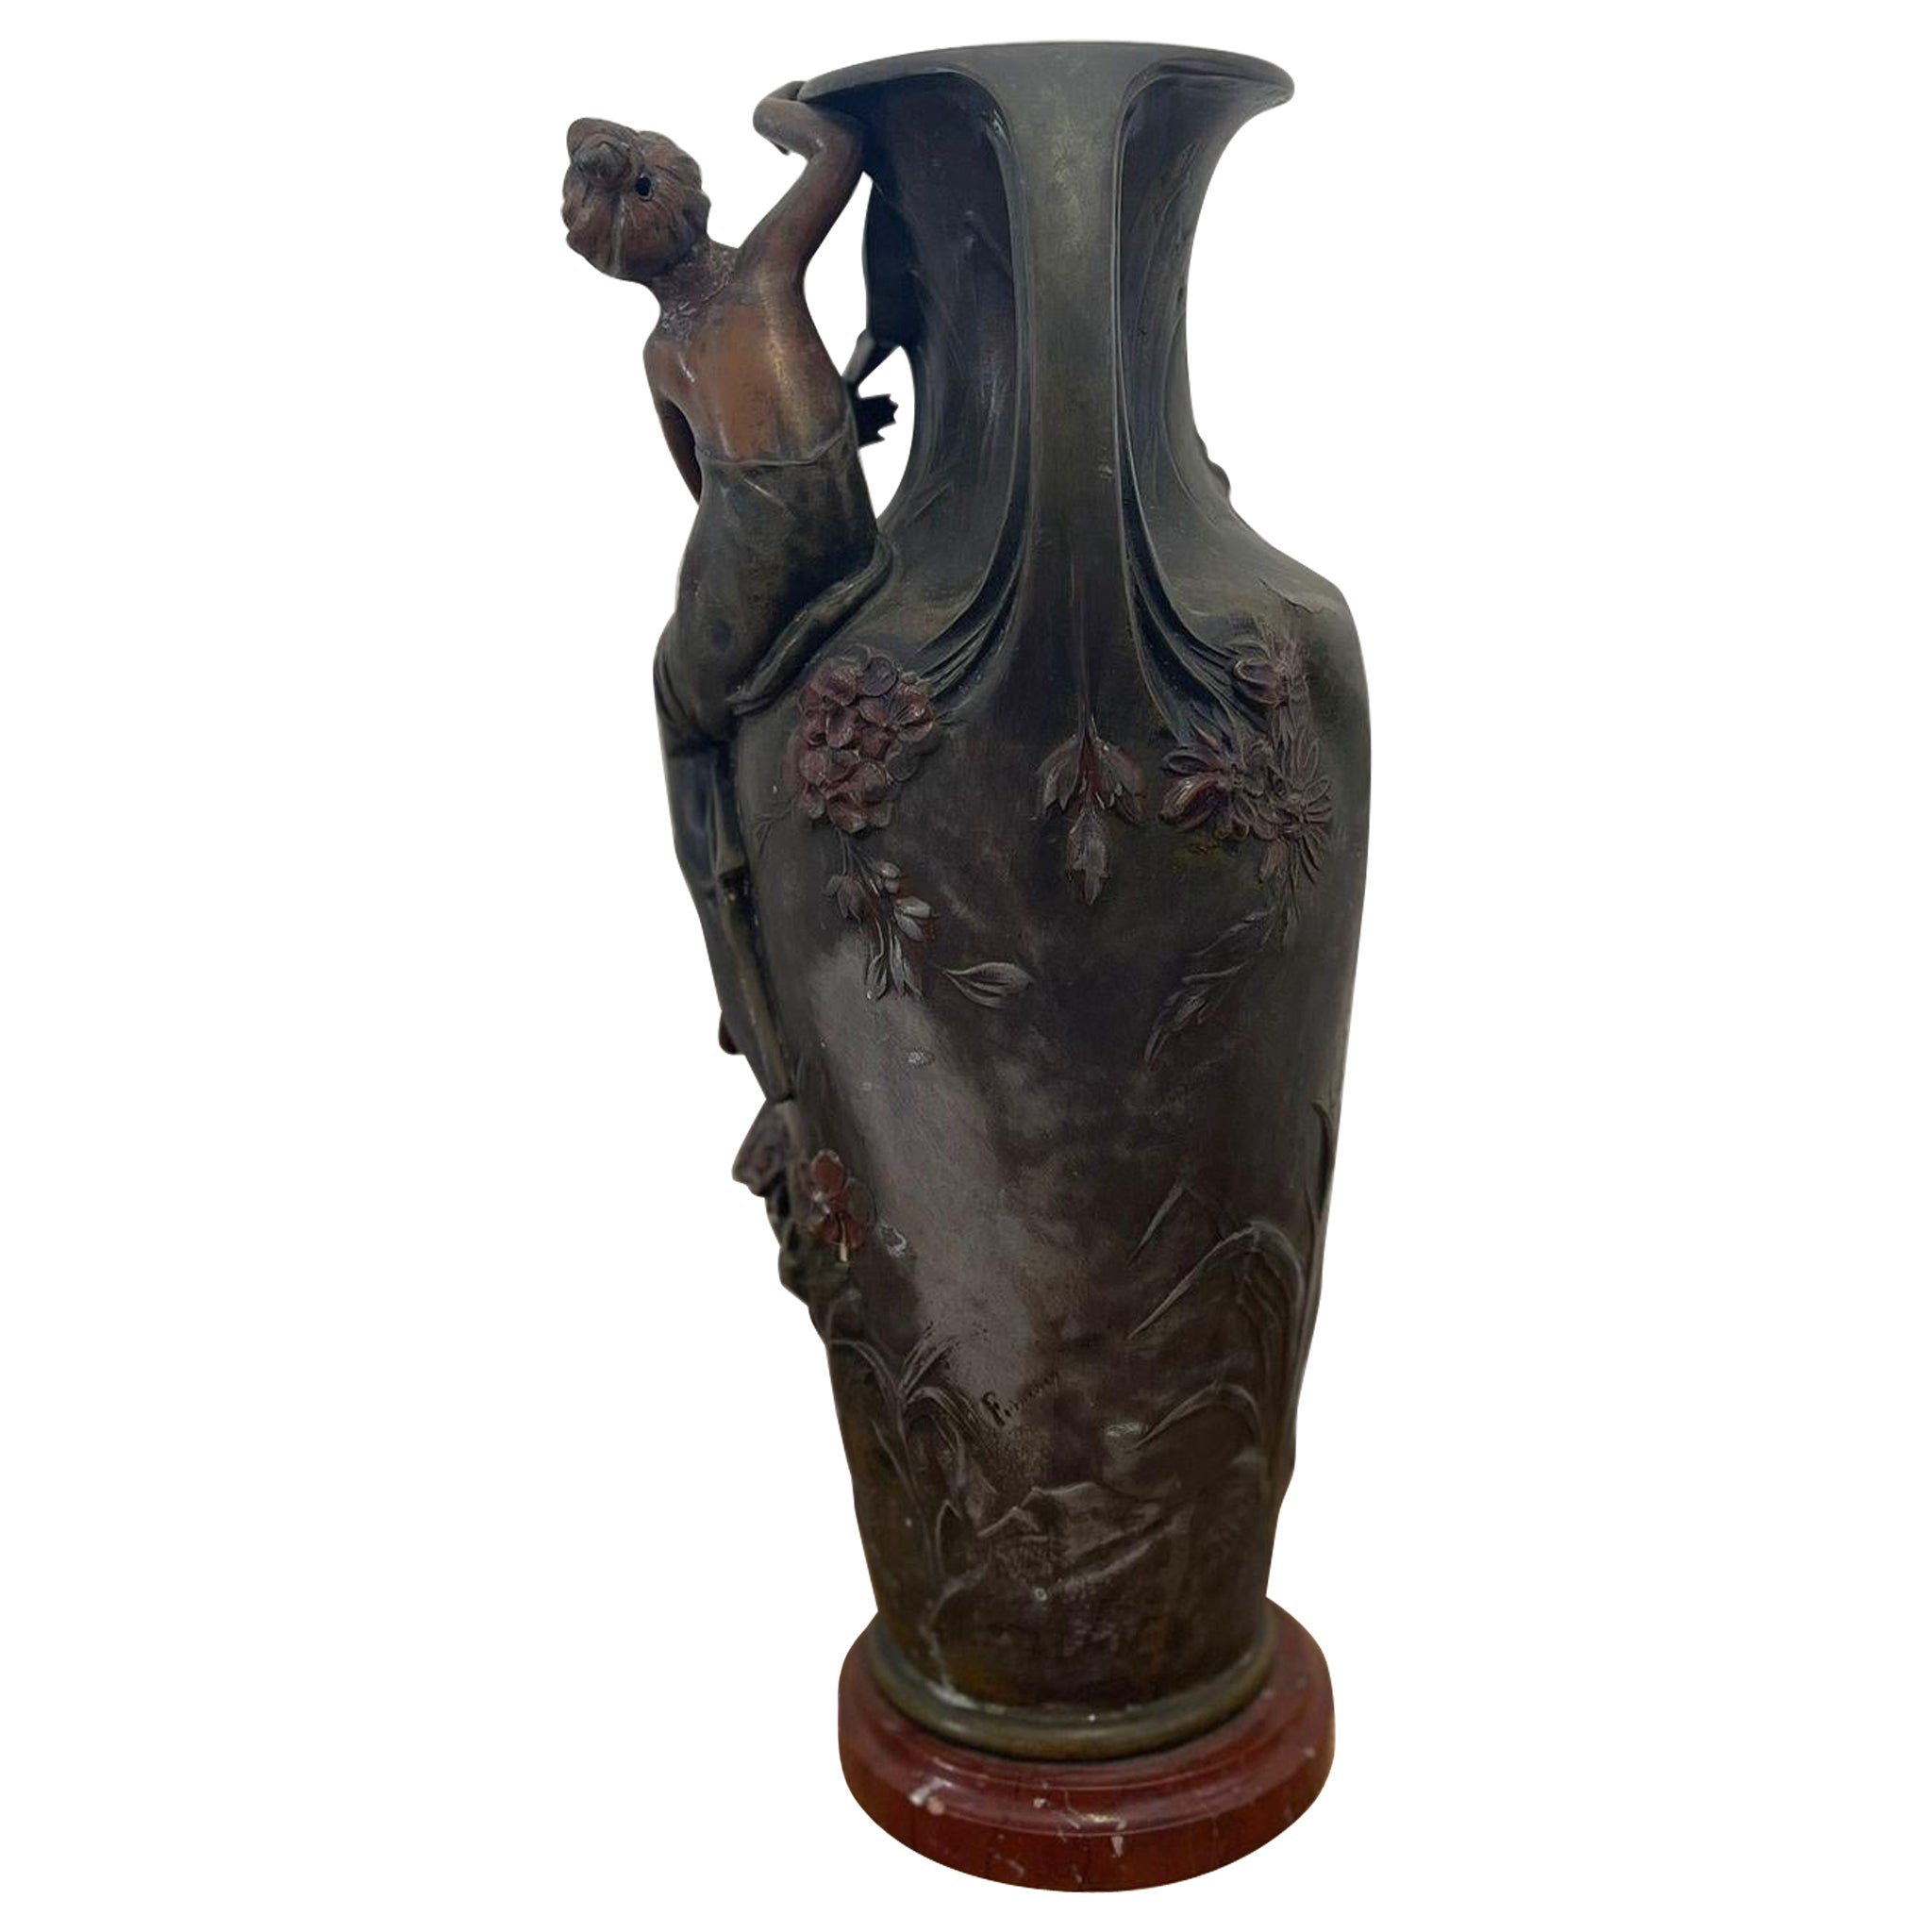 Vintage Art Nouveau Era Vase With Feminine Figurine Sculpture and Floral Motif. For Sale